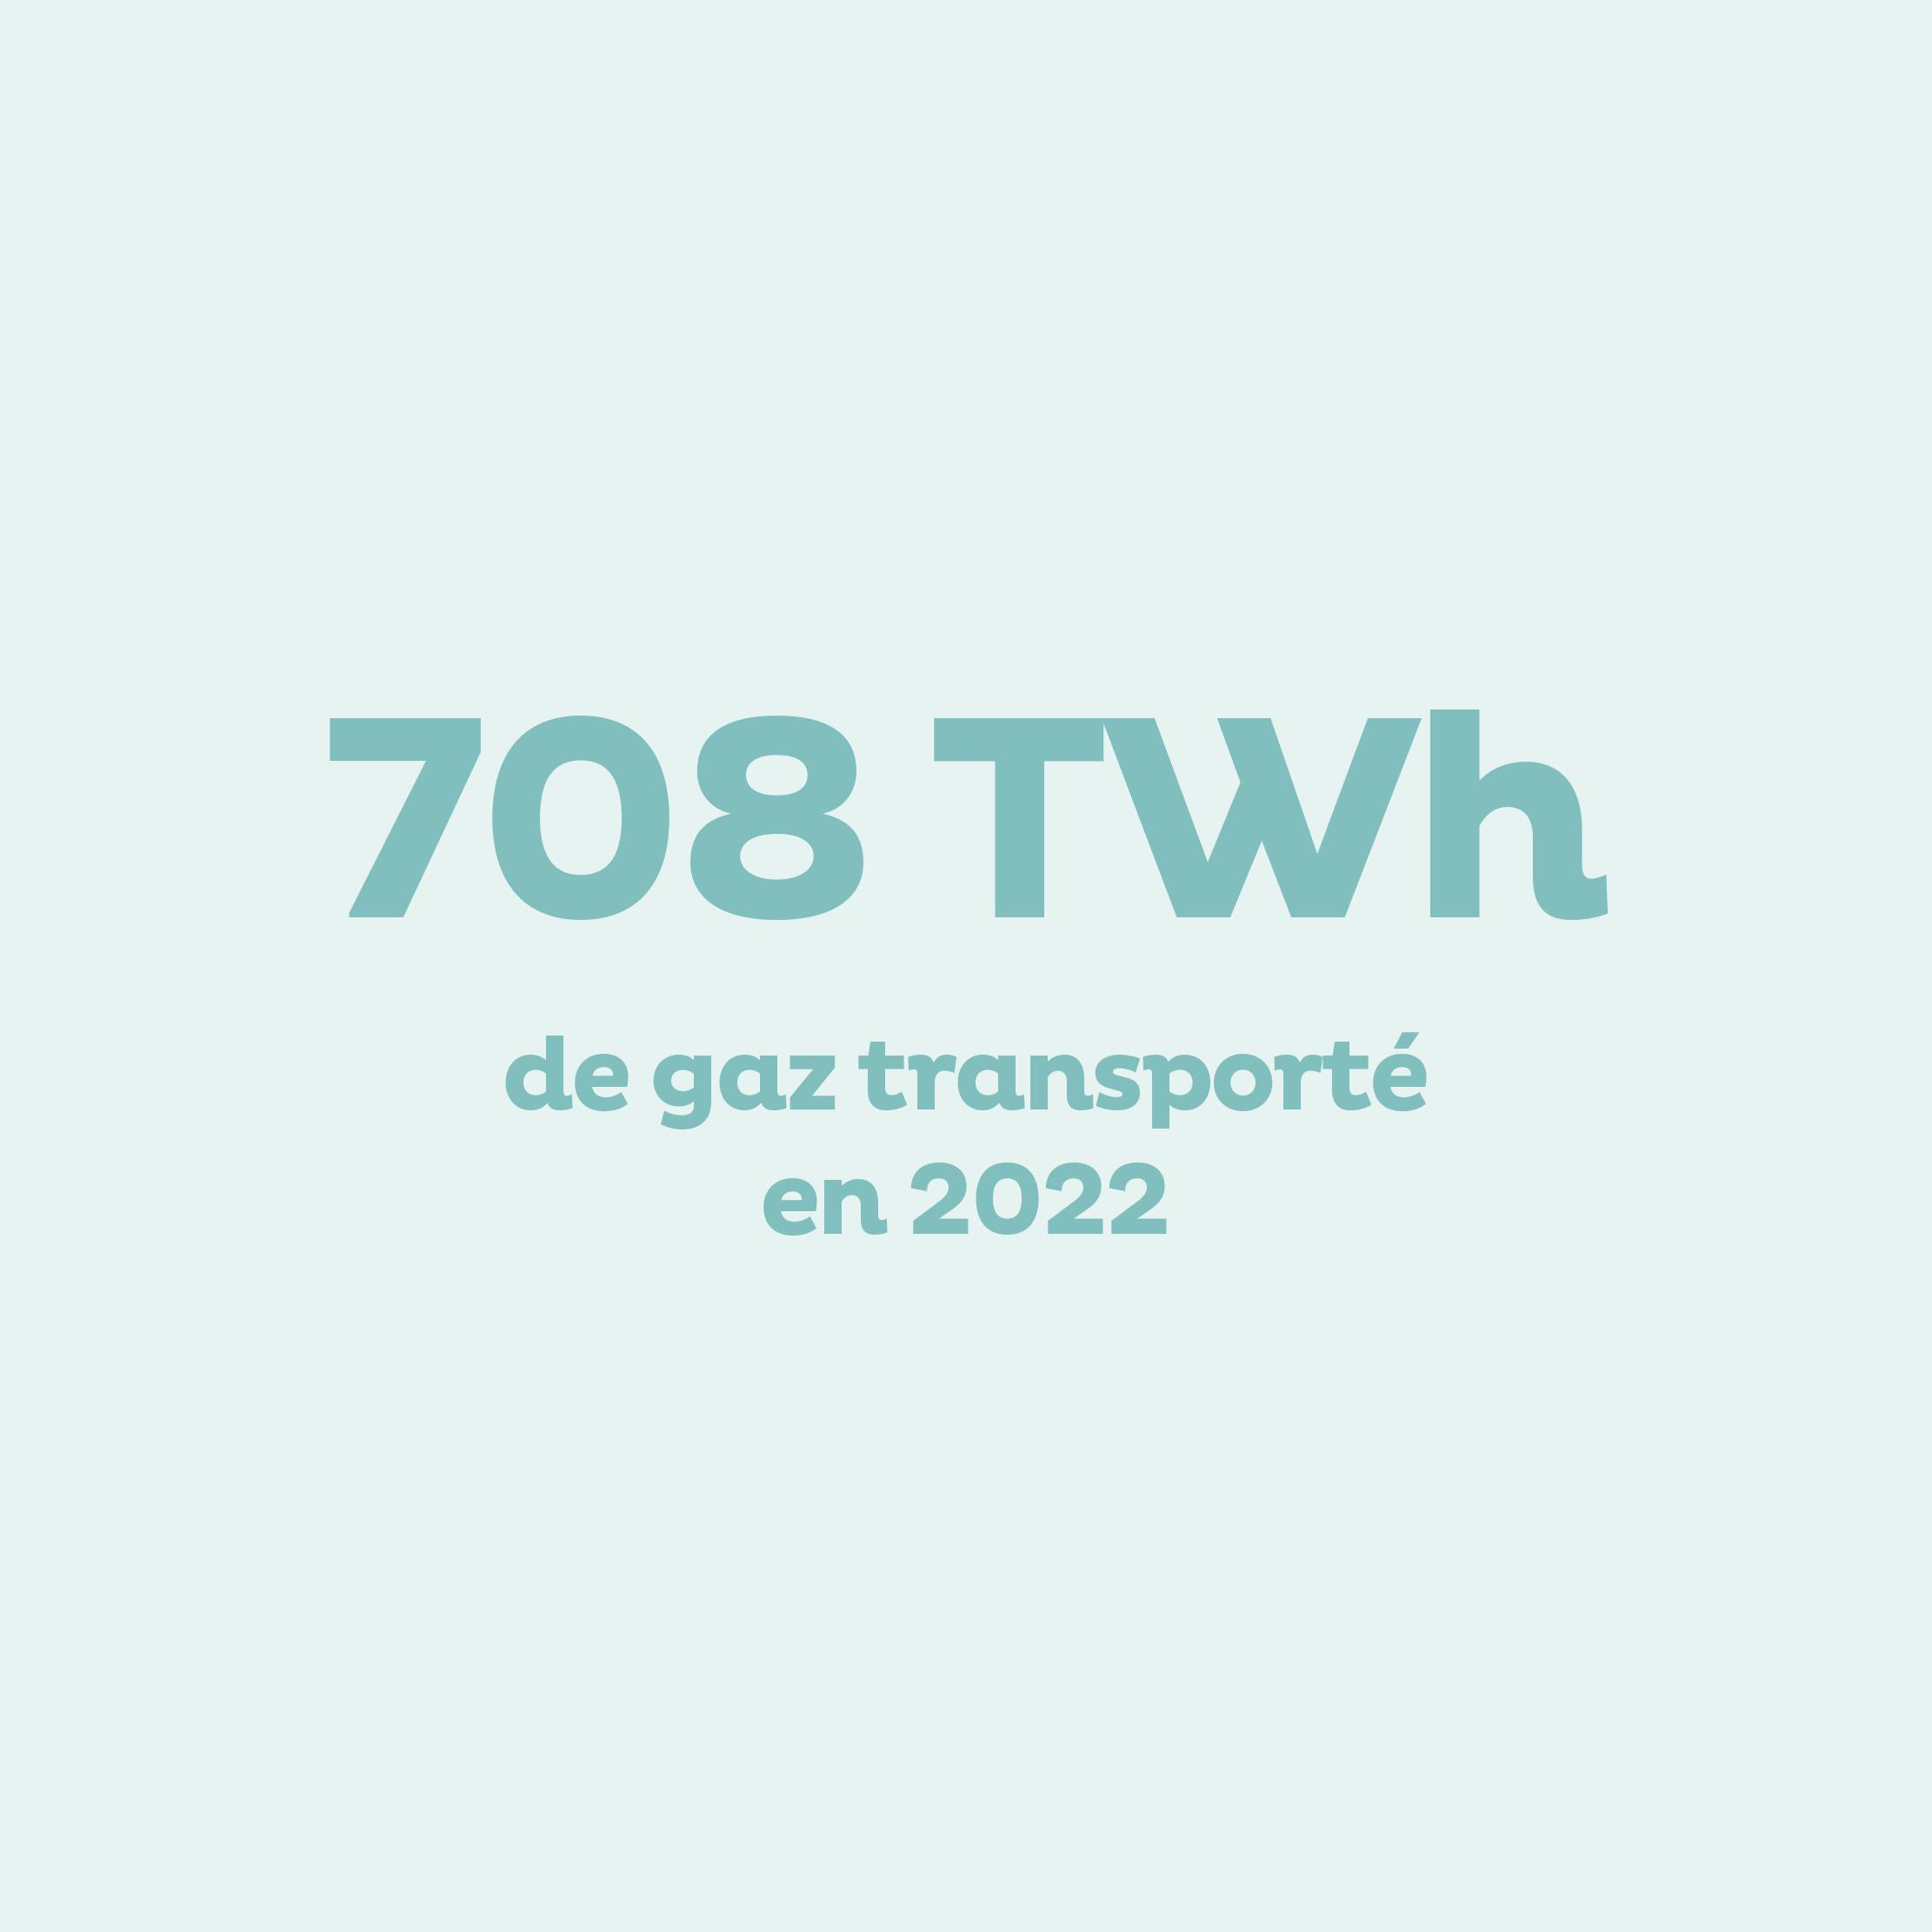 708 TWh de gaz transporté en 2022